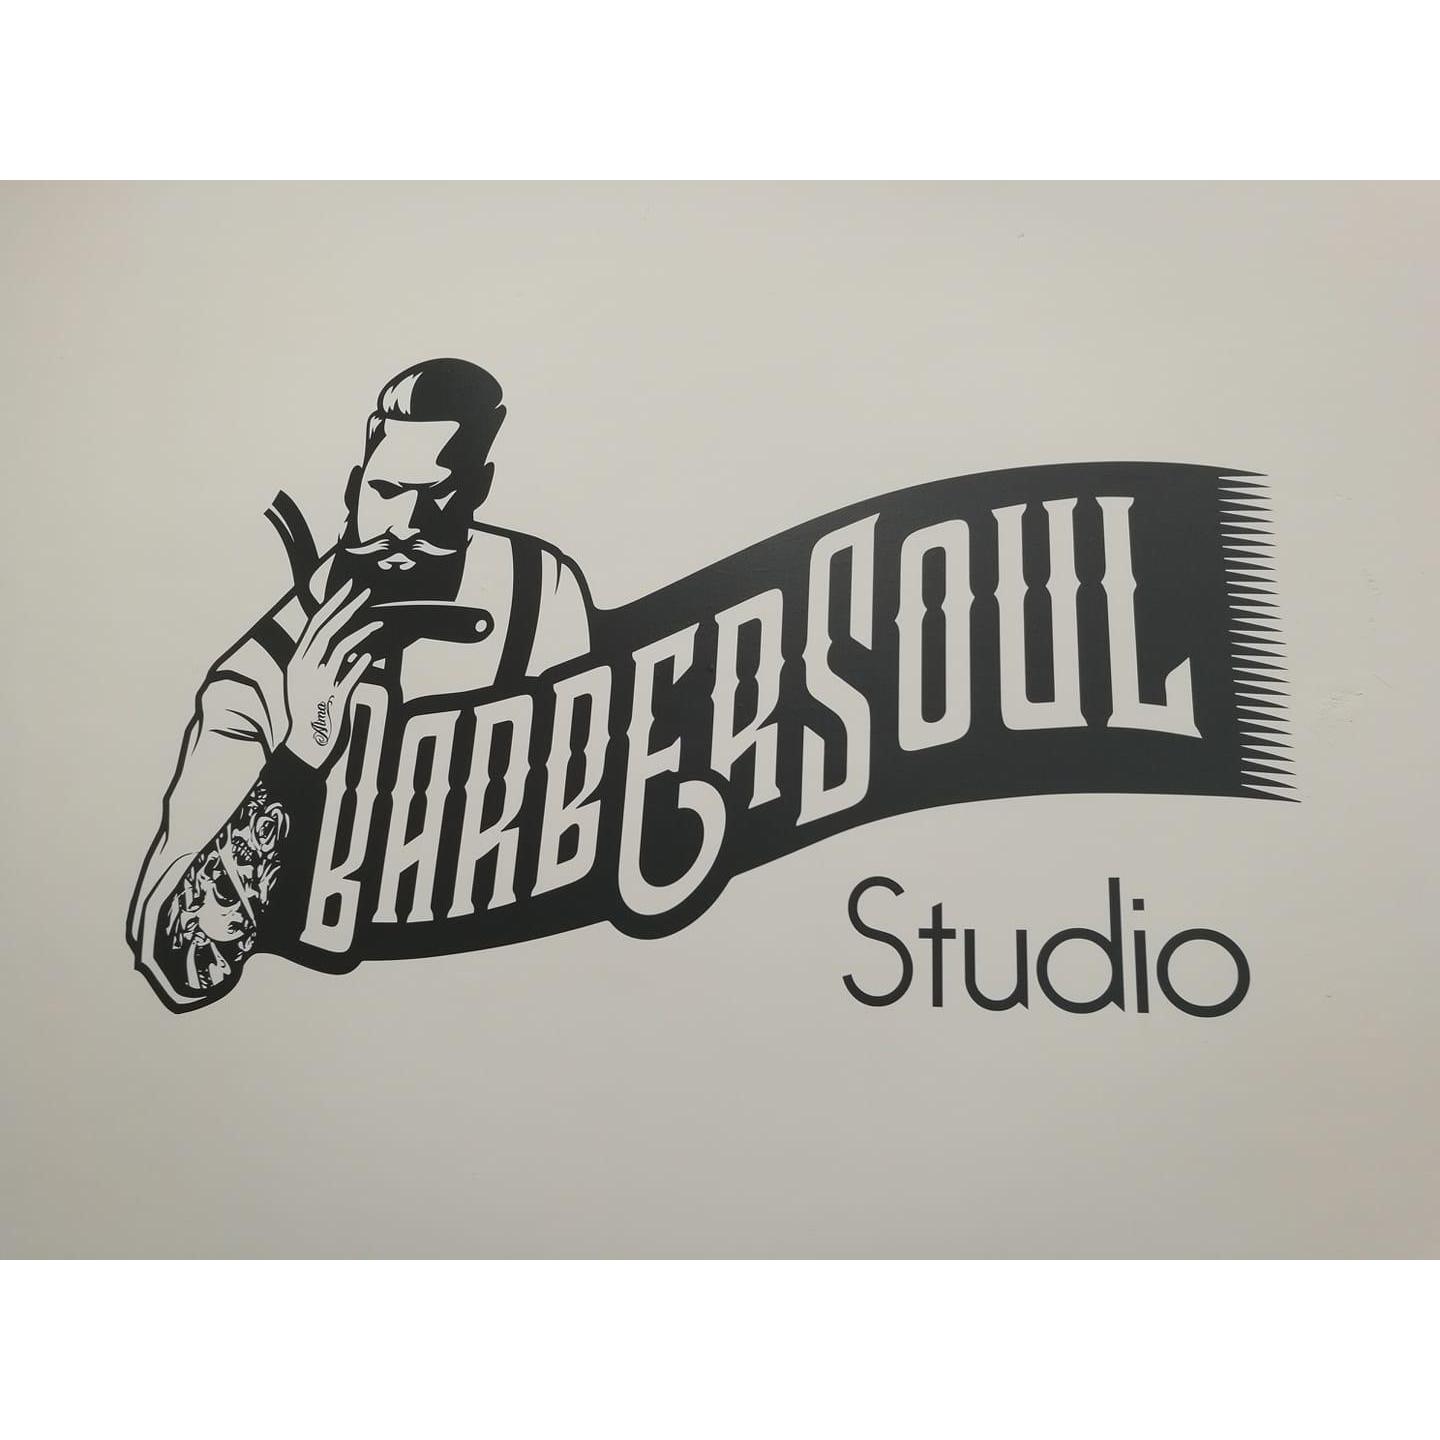 Barbersoul Studio Alicante